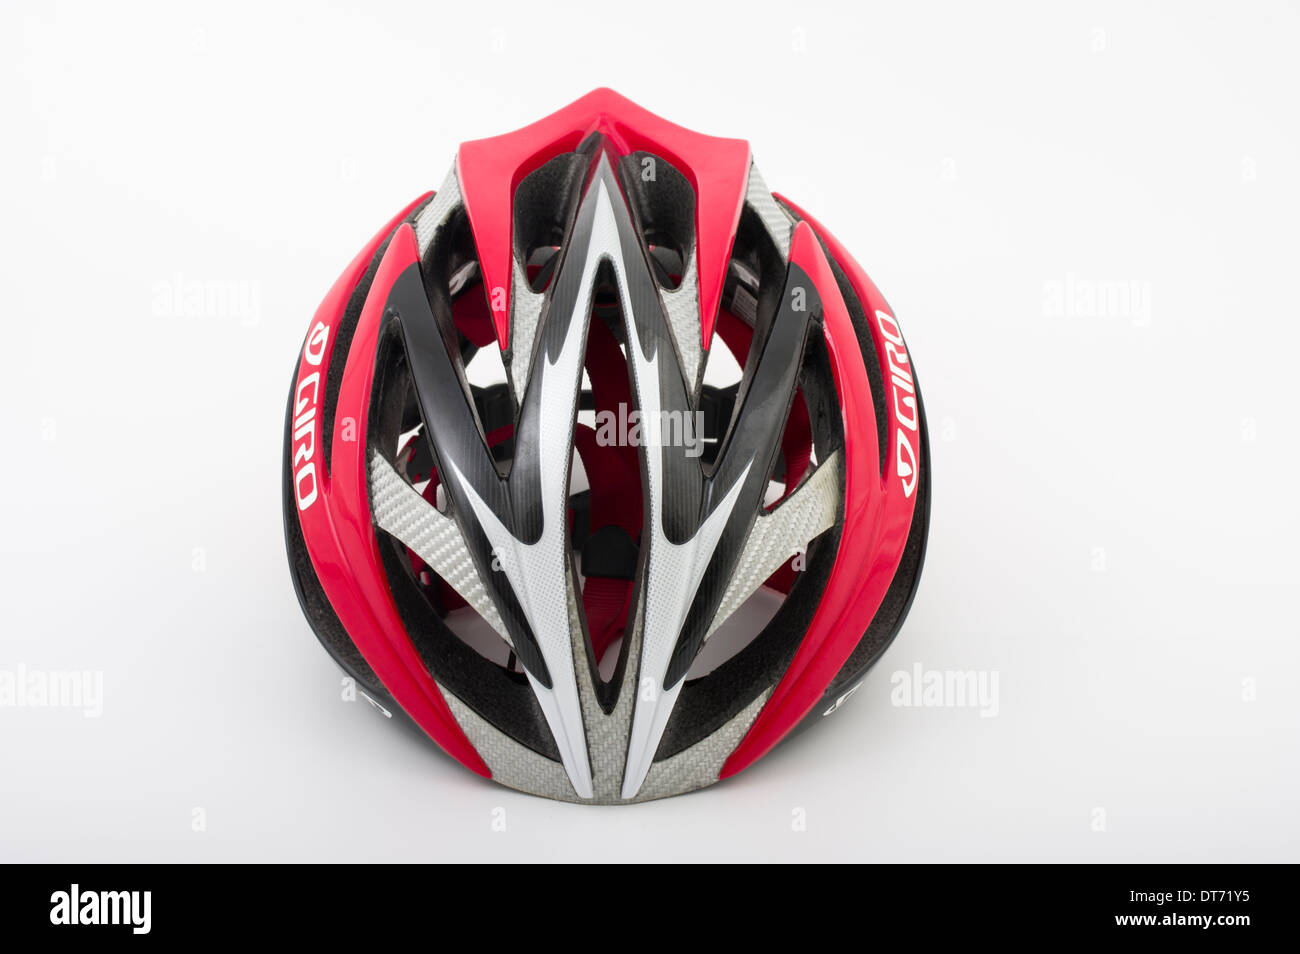 Giro Ionos leichte Strassenrennen Radsport / Triathlon-Helm Stockfoto